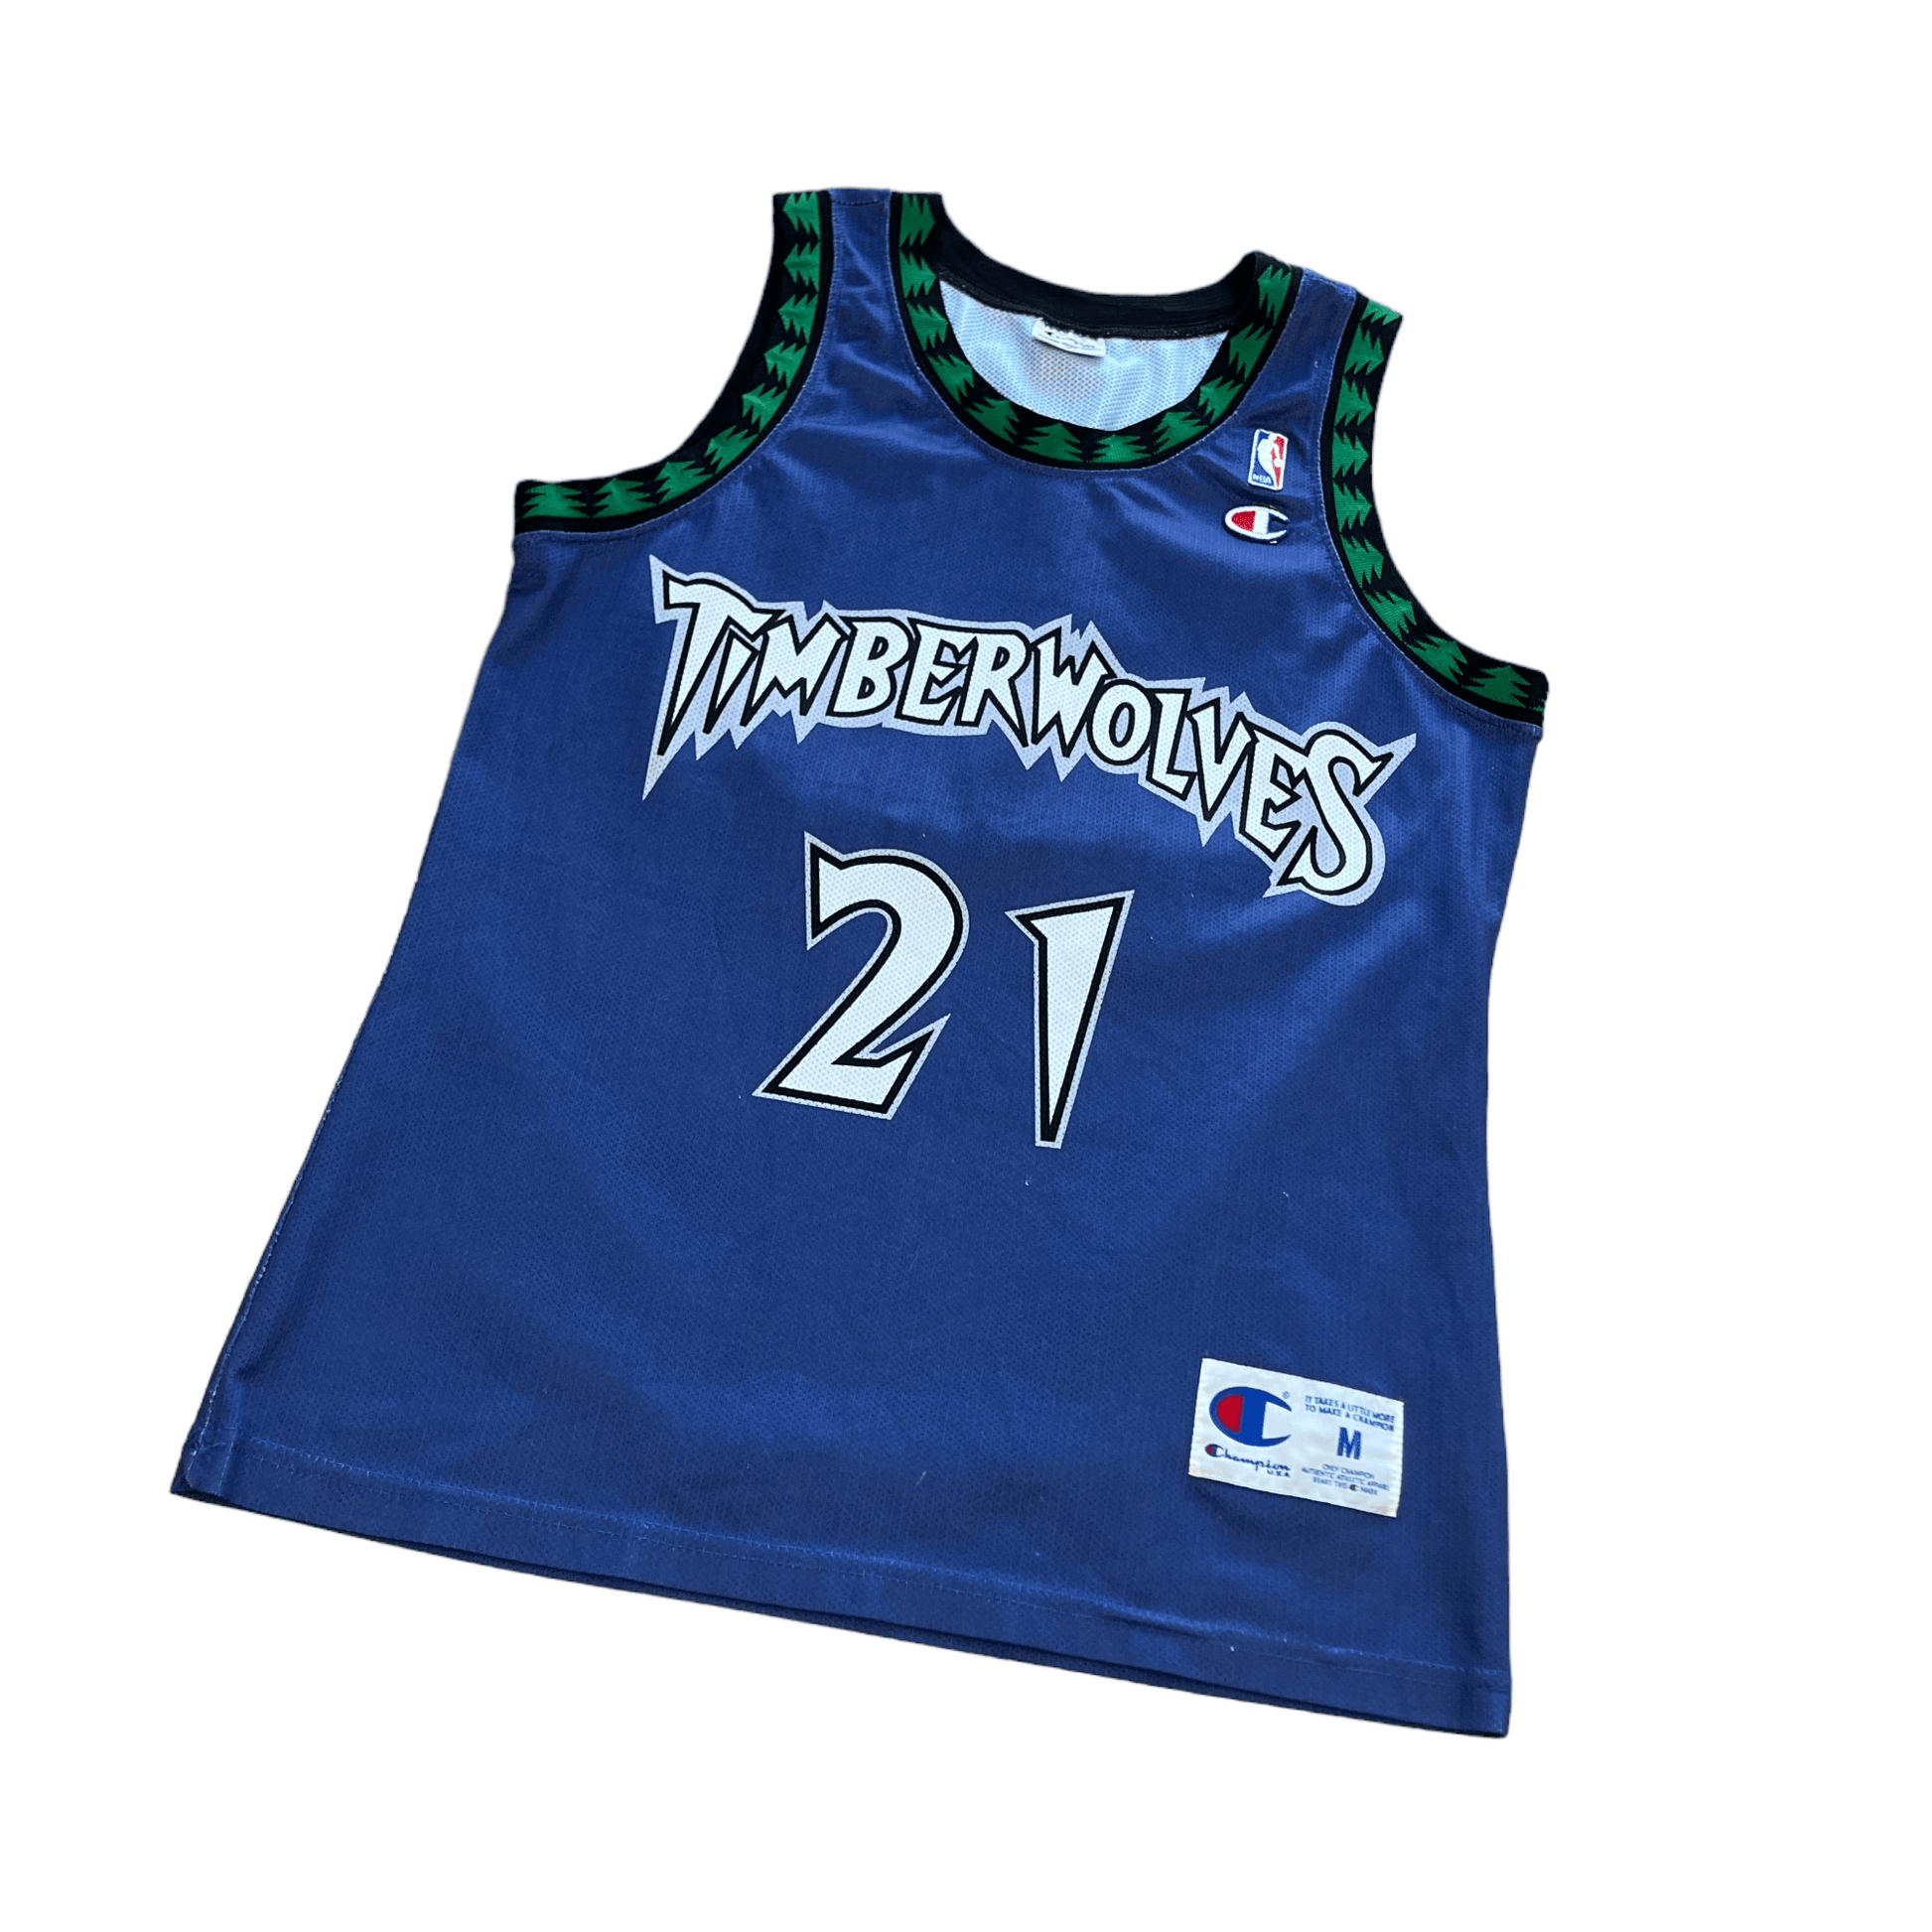 Vintage Purple Champion NBA Timberwolves Basketball Tee - Medium - The Streetwear Studio